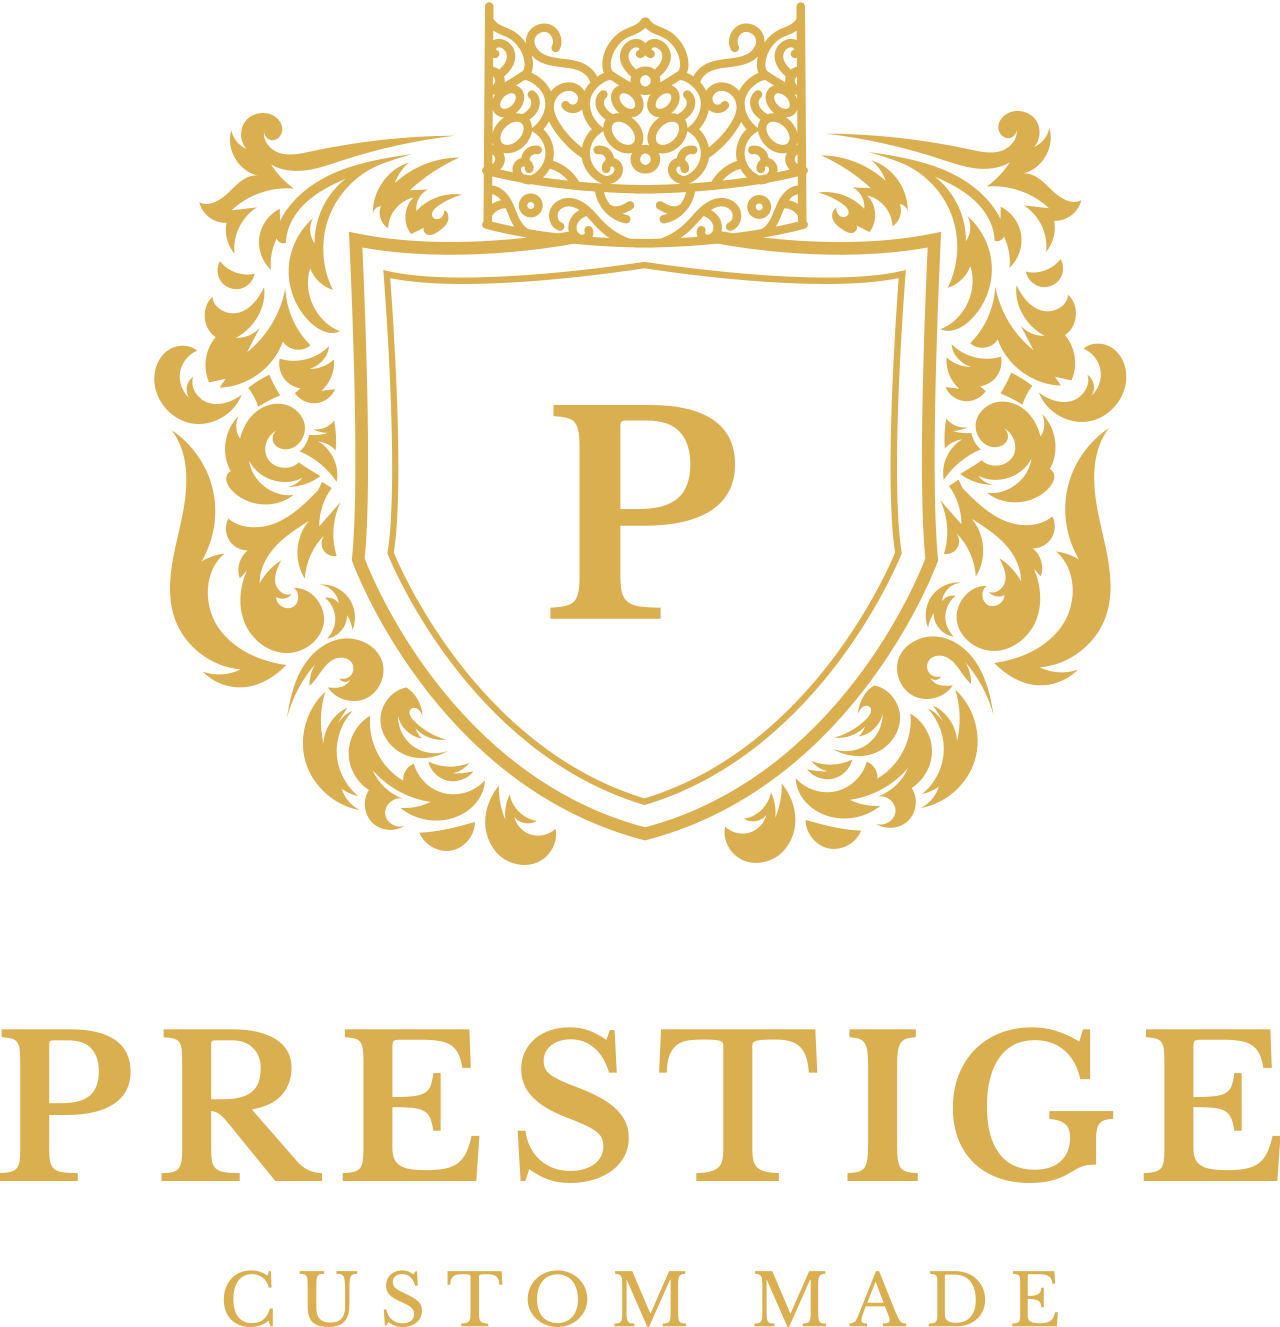 Prestige's logo